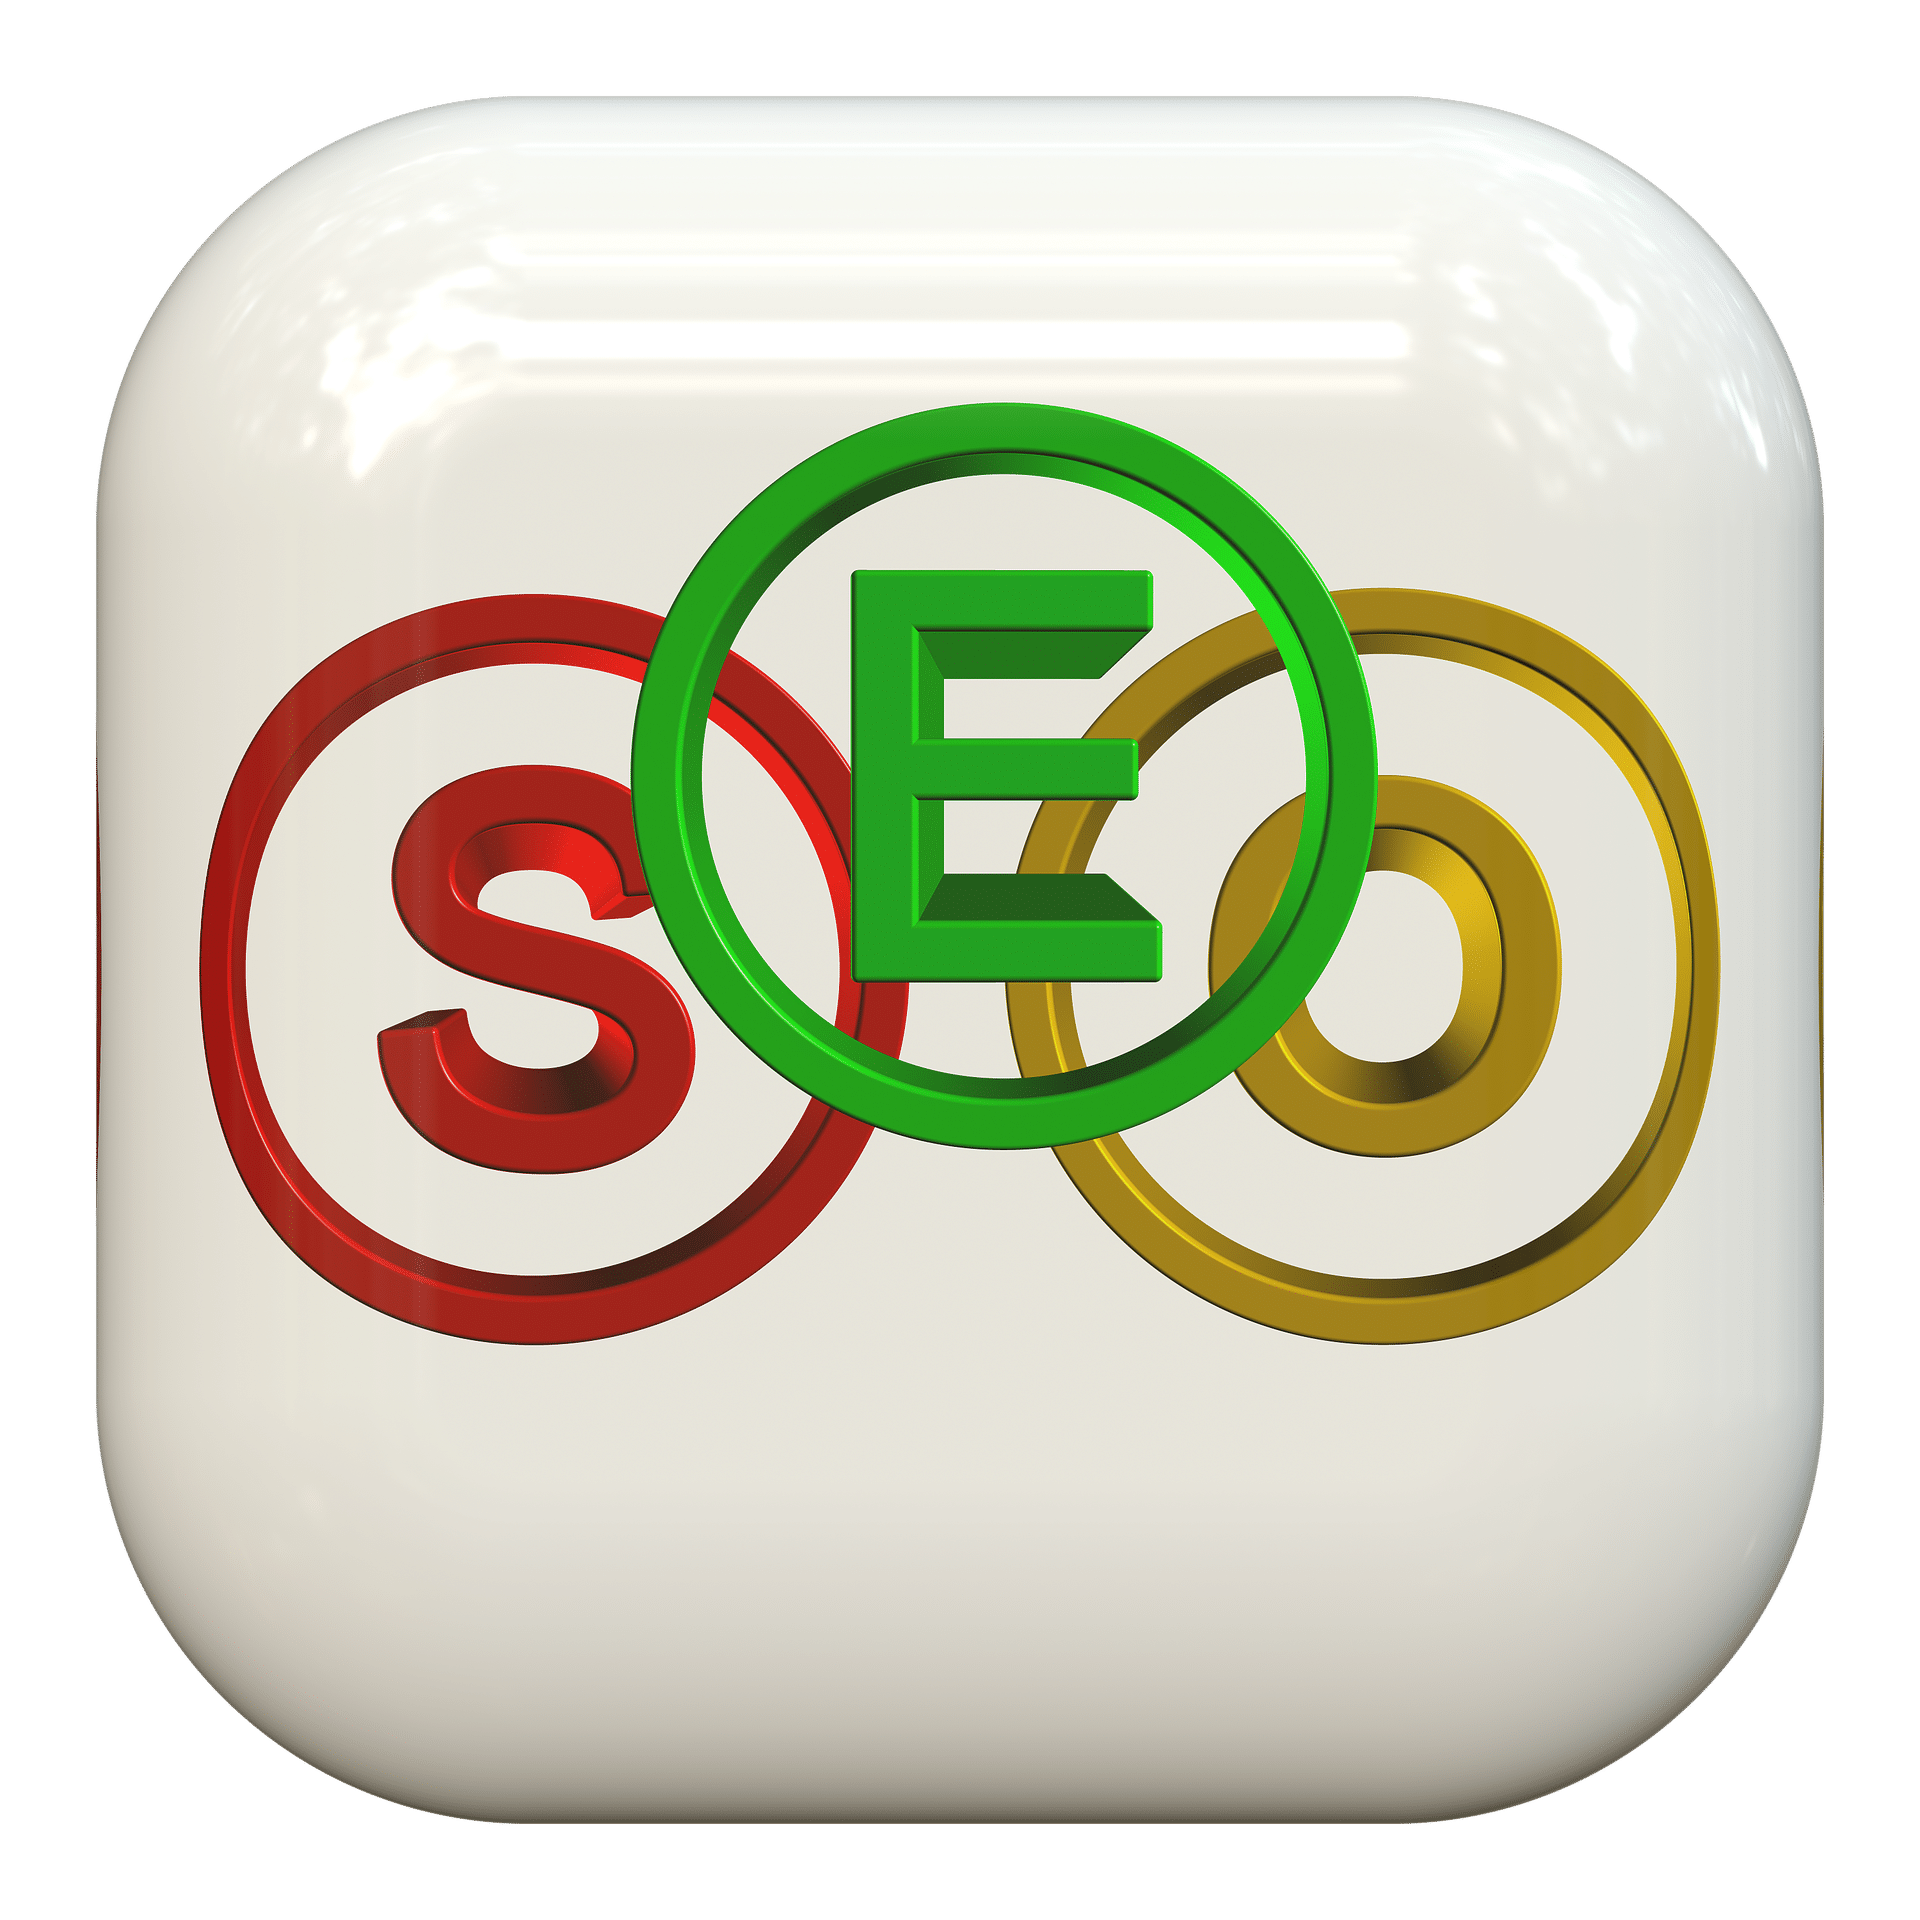 Suchmaschinenoptimierung ist wichtig. SEO sollte man nicht mit gefährlichem Halbwissen selber machen! Foto: Geralt - Pixabay